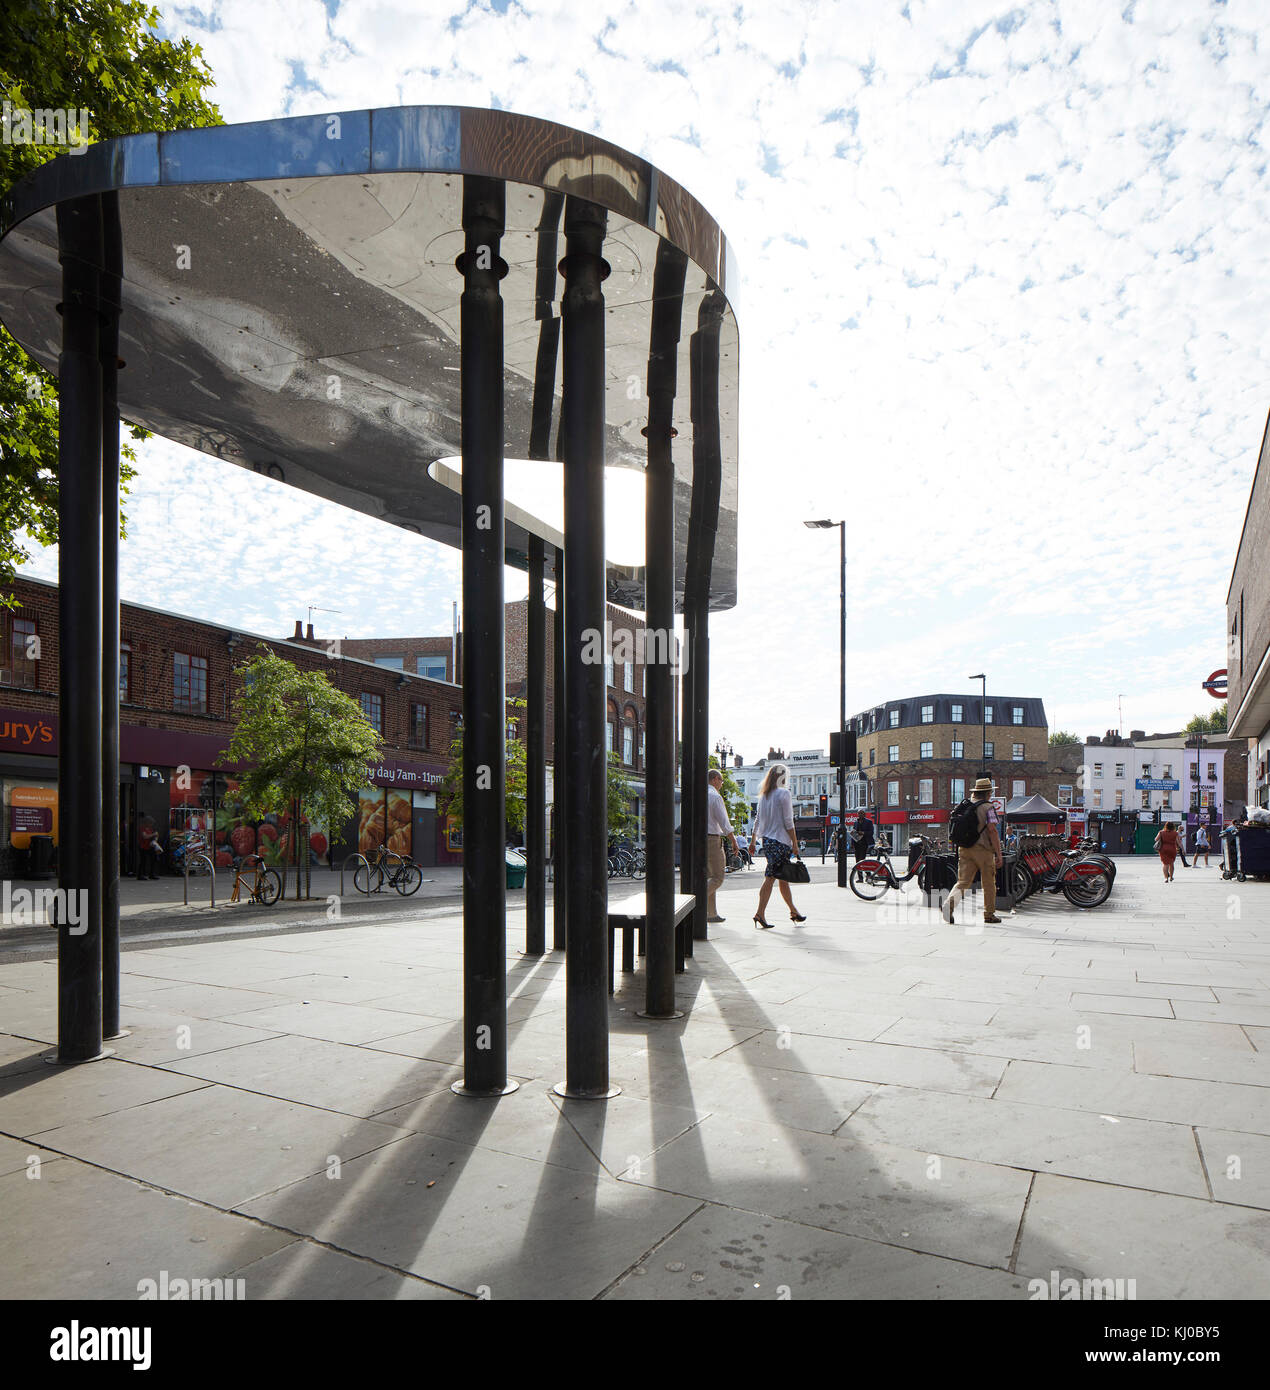 Binfield Road Bushaltestelle Vordach. Stockwell Rahmen Masterplan, London, Vereinigtes Königreich. Architekt: DSDHA, 2017. Stockfoto